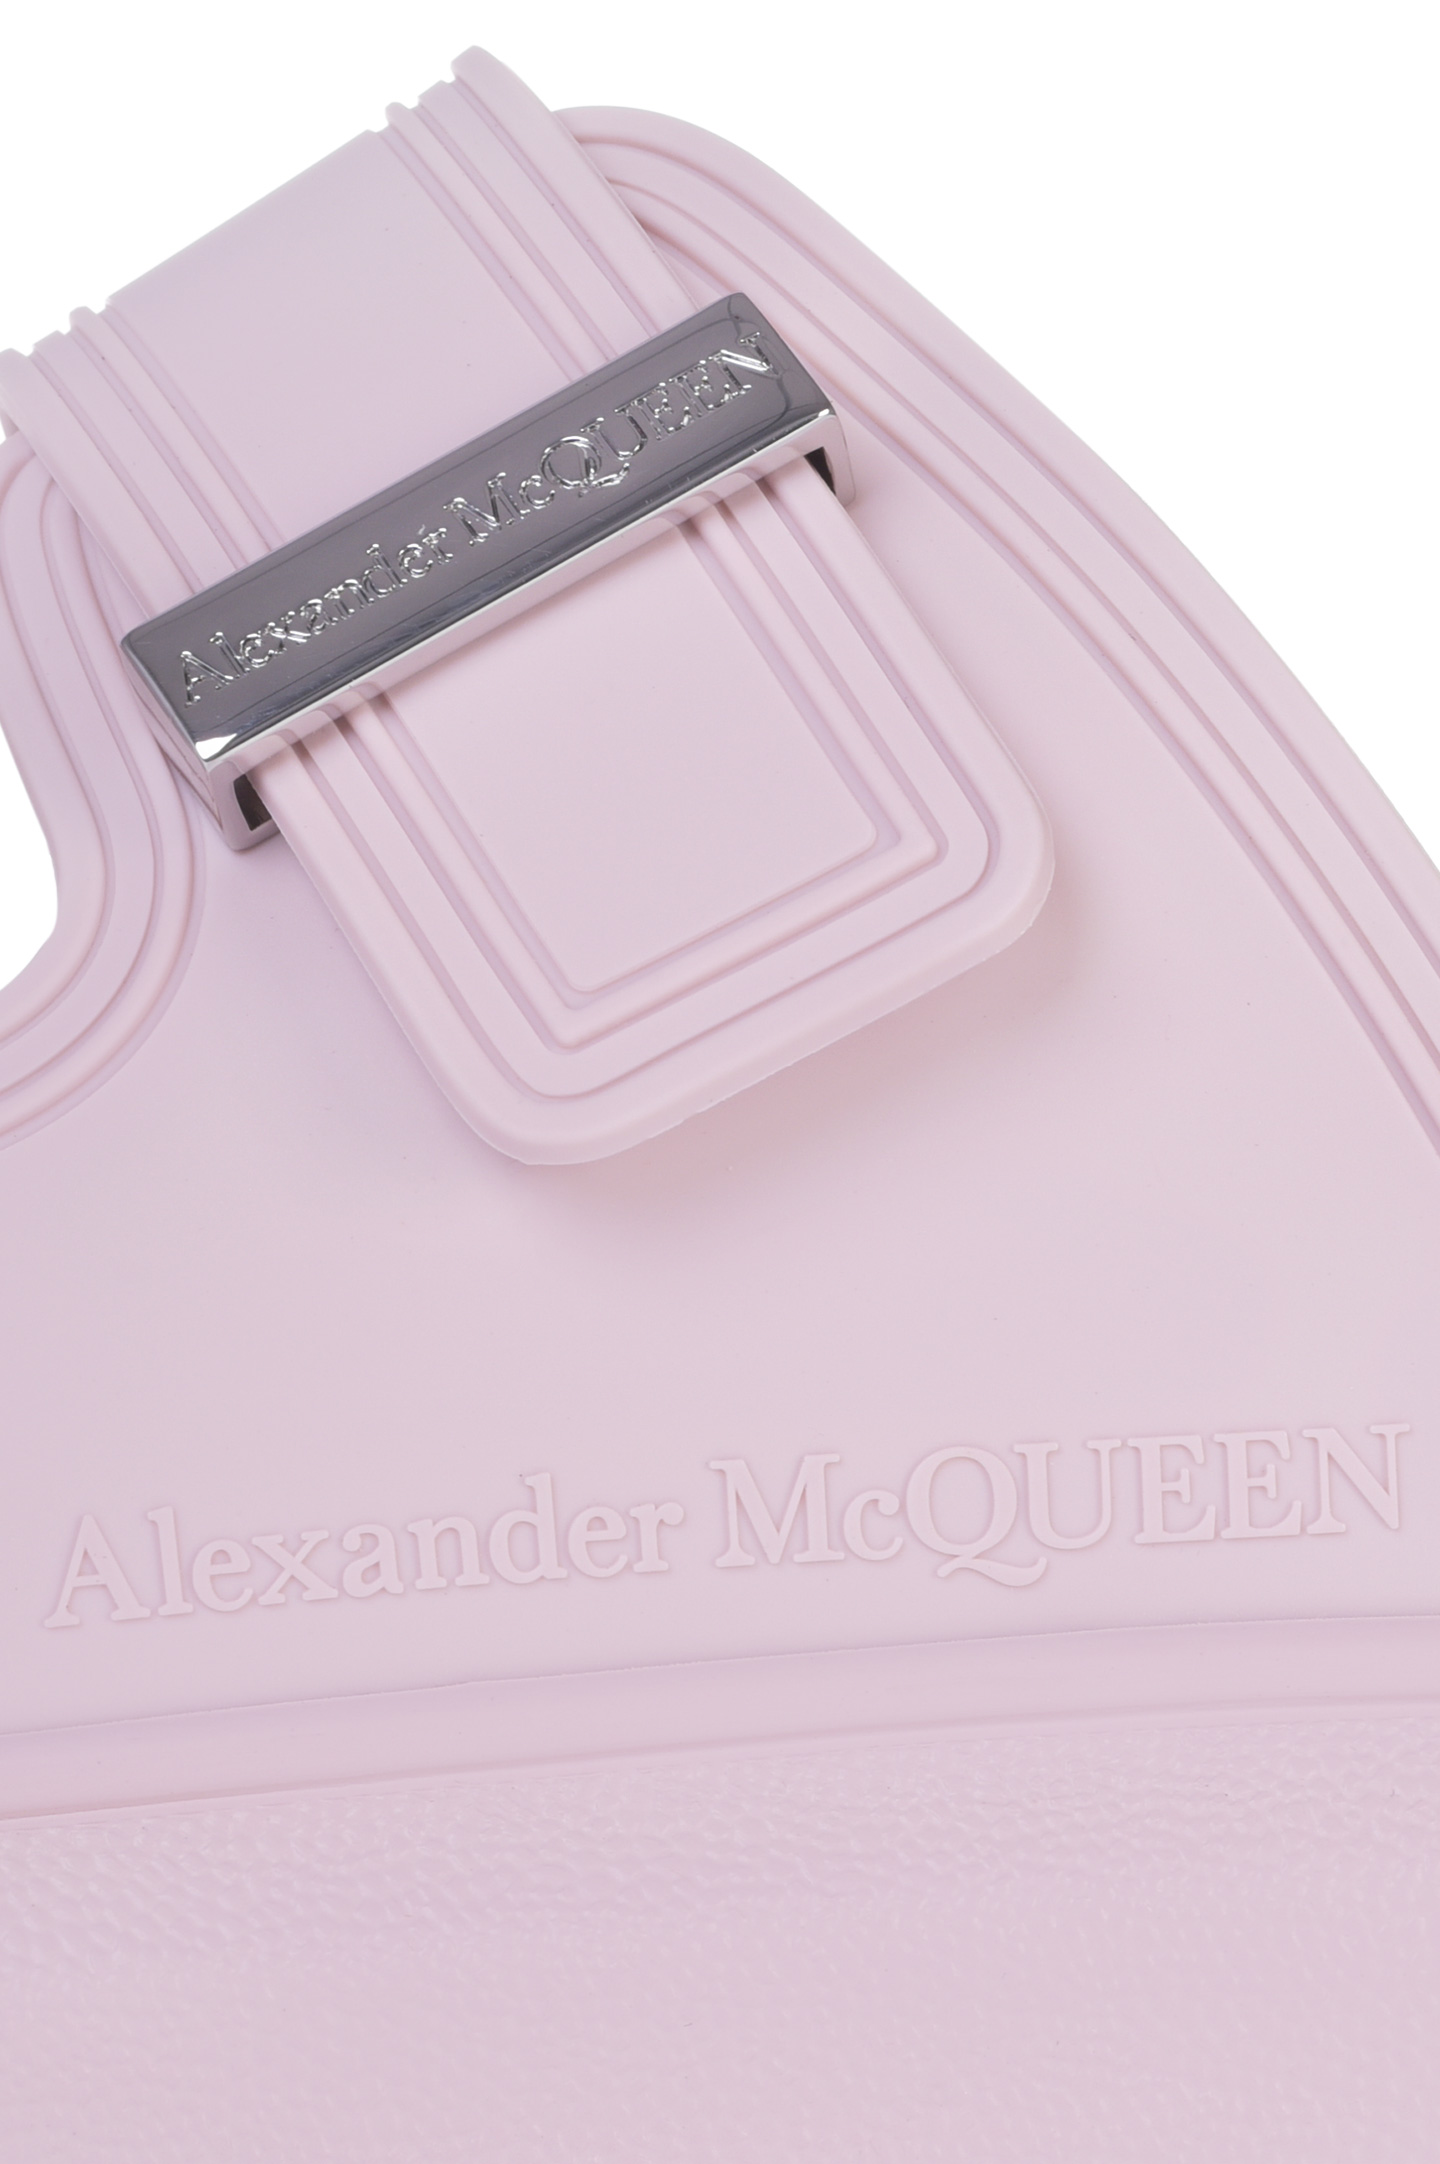 Пантолеты ALEXANDER MCQUEEN 658063 W4Q51, цвет: Розовый, Женский